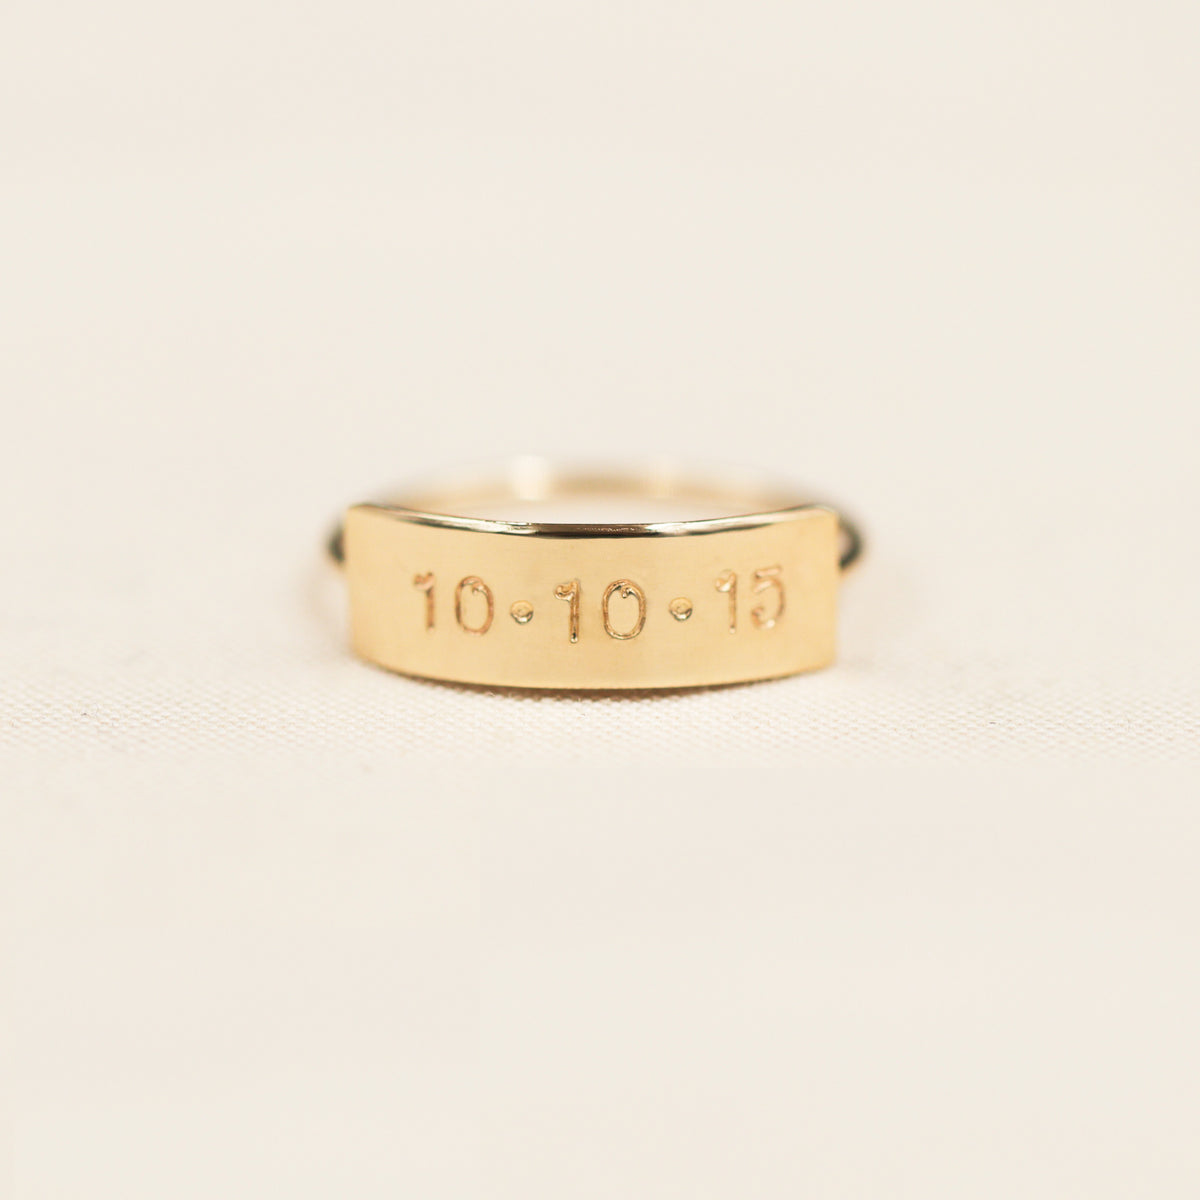 Aspen Custom Ring